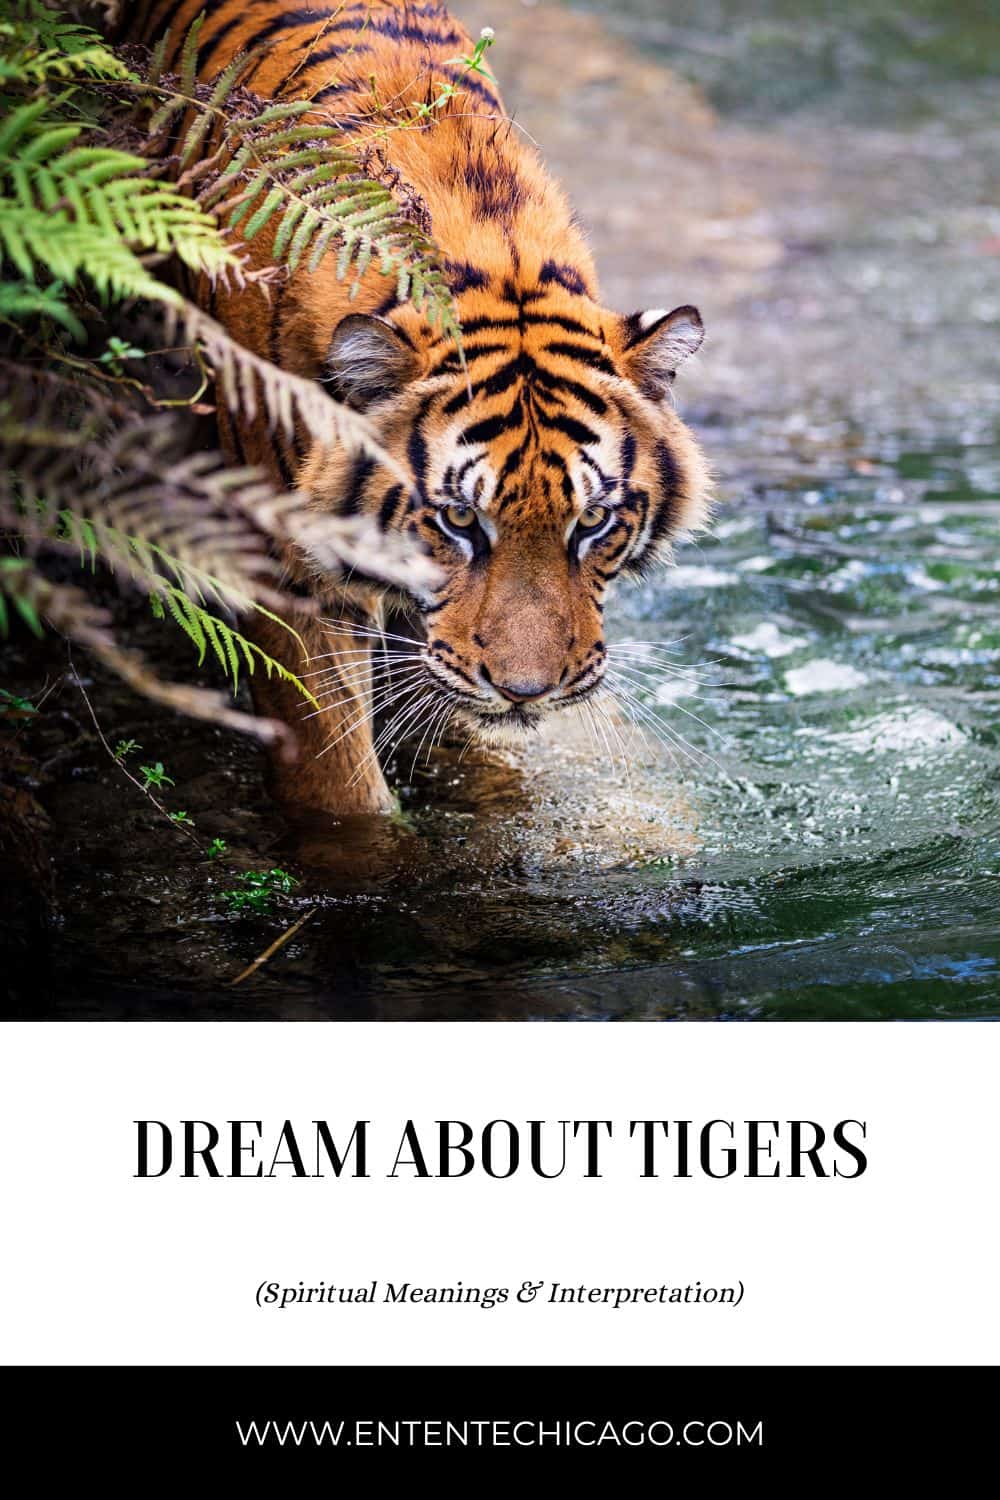  Drøm om undsluppet tiger (heldig fortolkning)